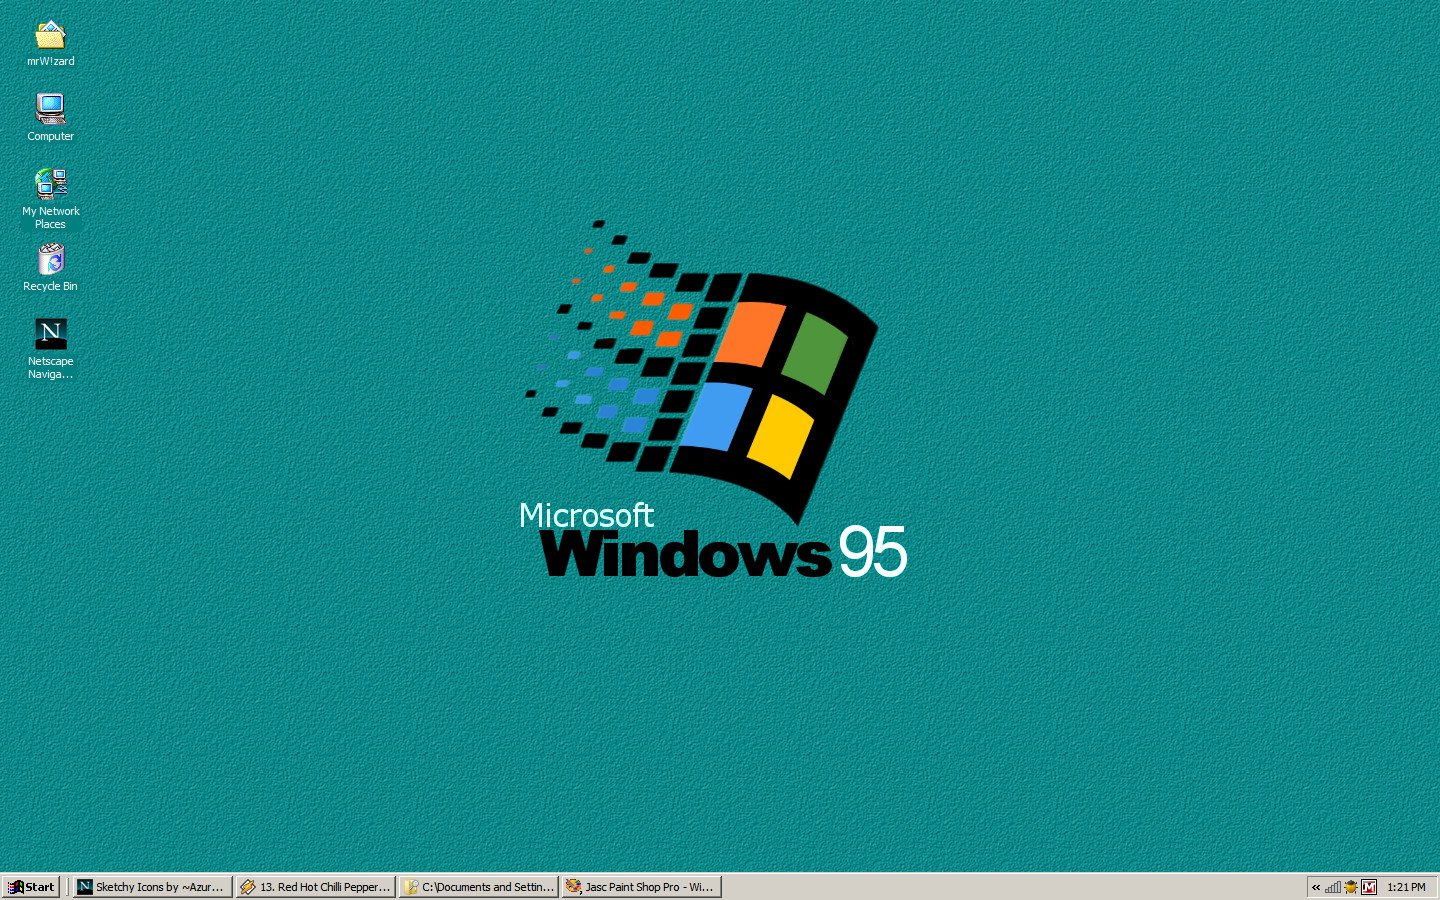 Hình nền Windows 95 đã trở thành biểu tượng của một thời đại. Với tấm hình nền đặc trưng, người dùng có thể tái tạo lại niềm đam mê với phần mềm này. Hãy xem thử hình ảnh liên quan để đắm mình trong những kỷ niệm đáng nhớ.